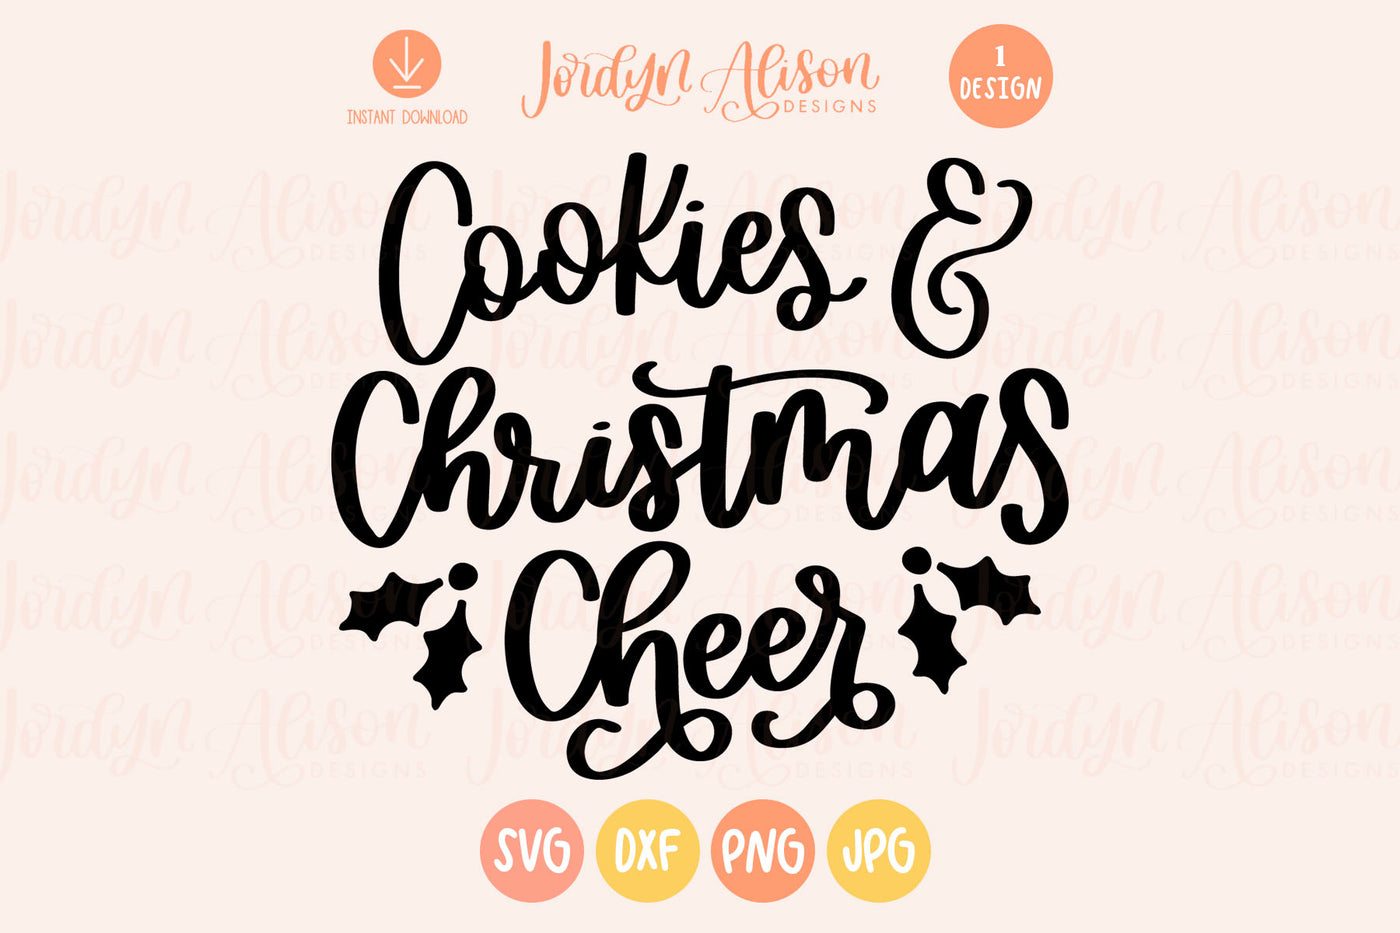 Cookies Christmas Cheer Christmas SVG